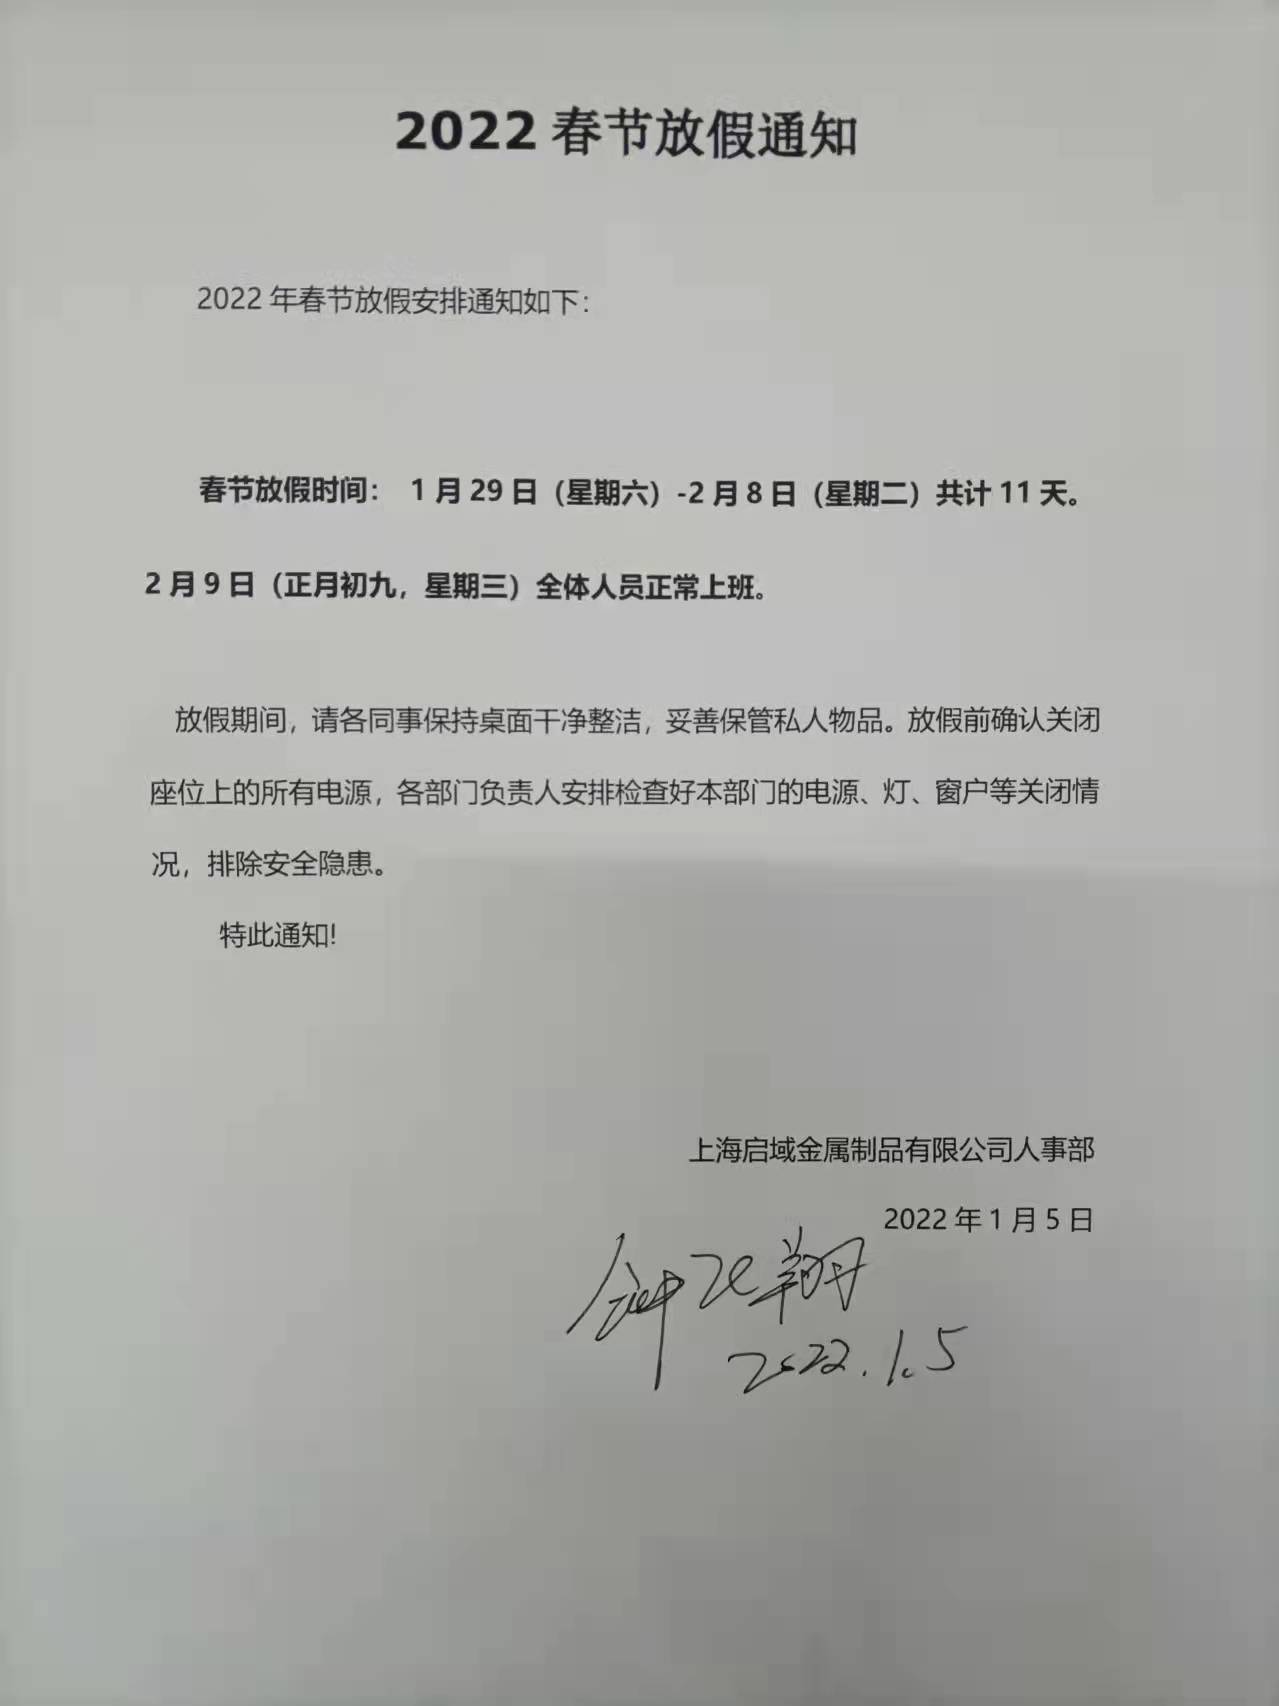 上海启域铝材厂2022年春节放假通知